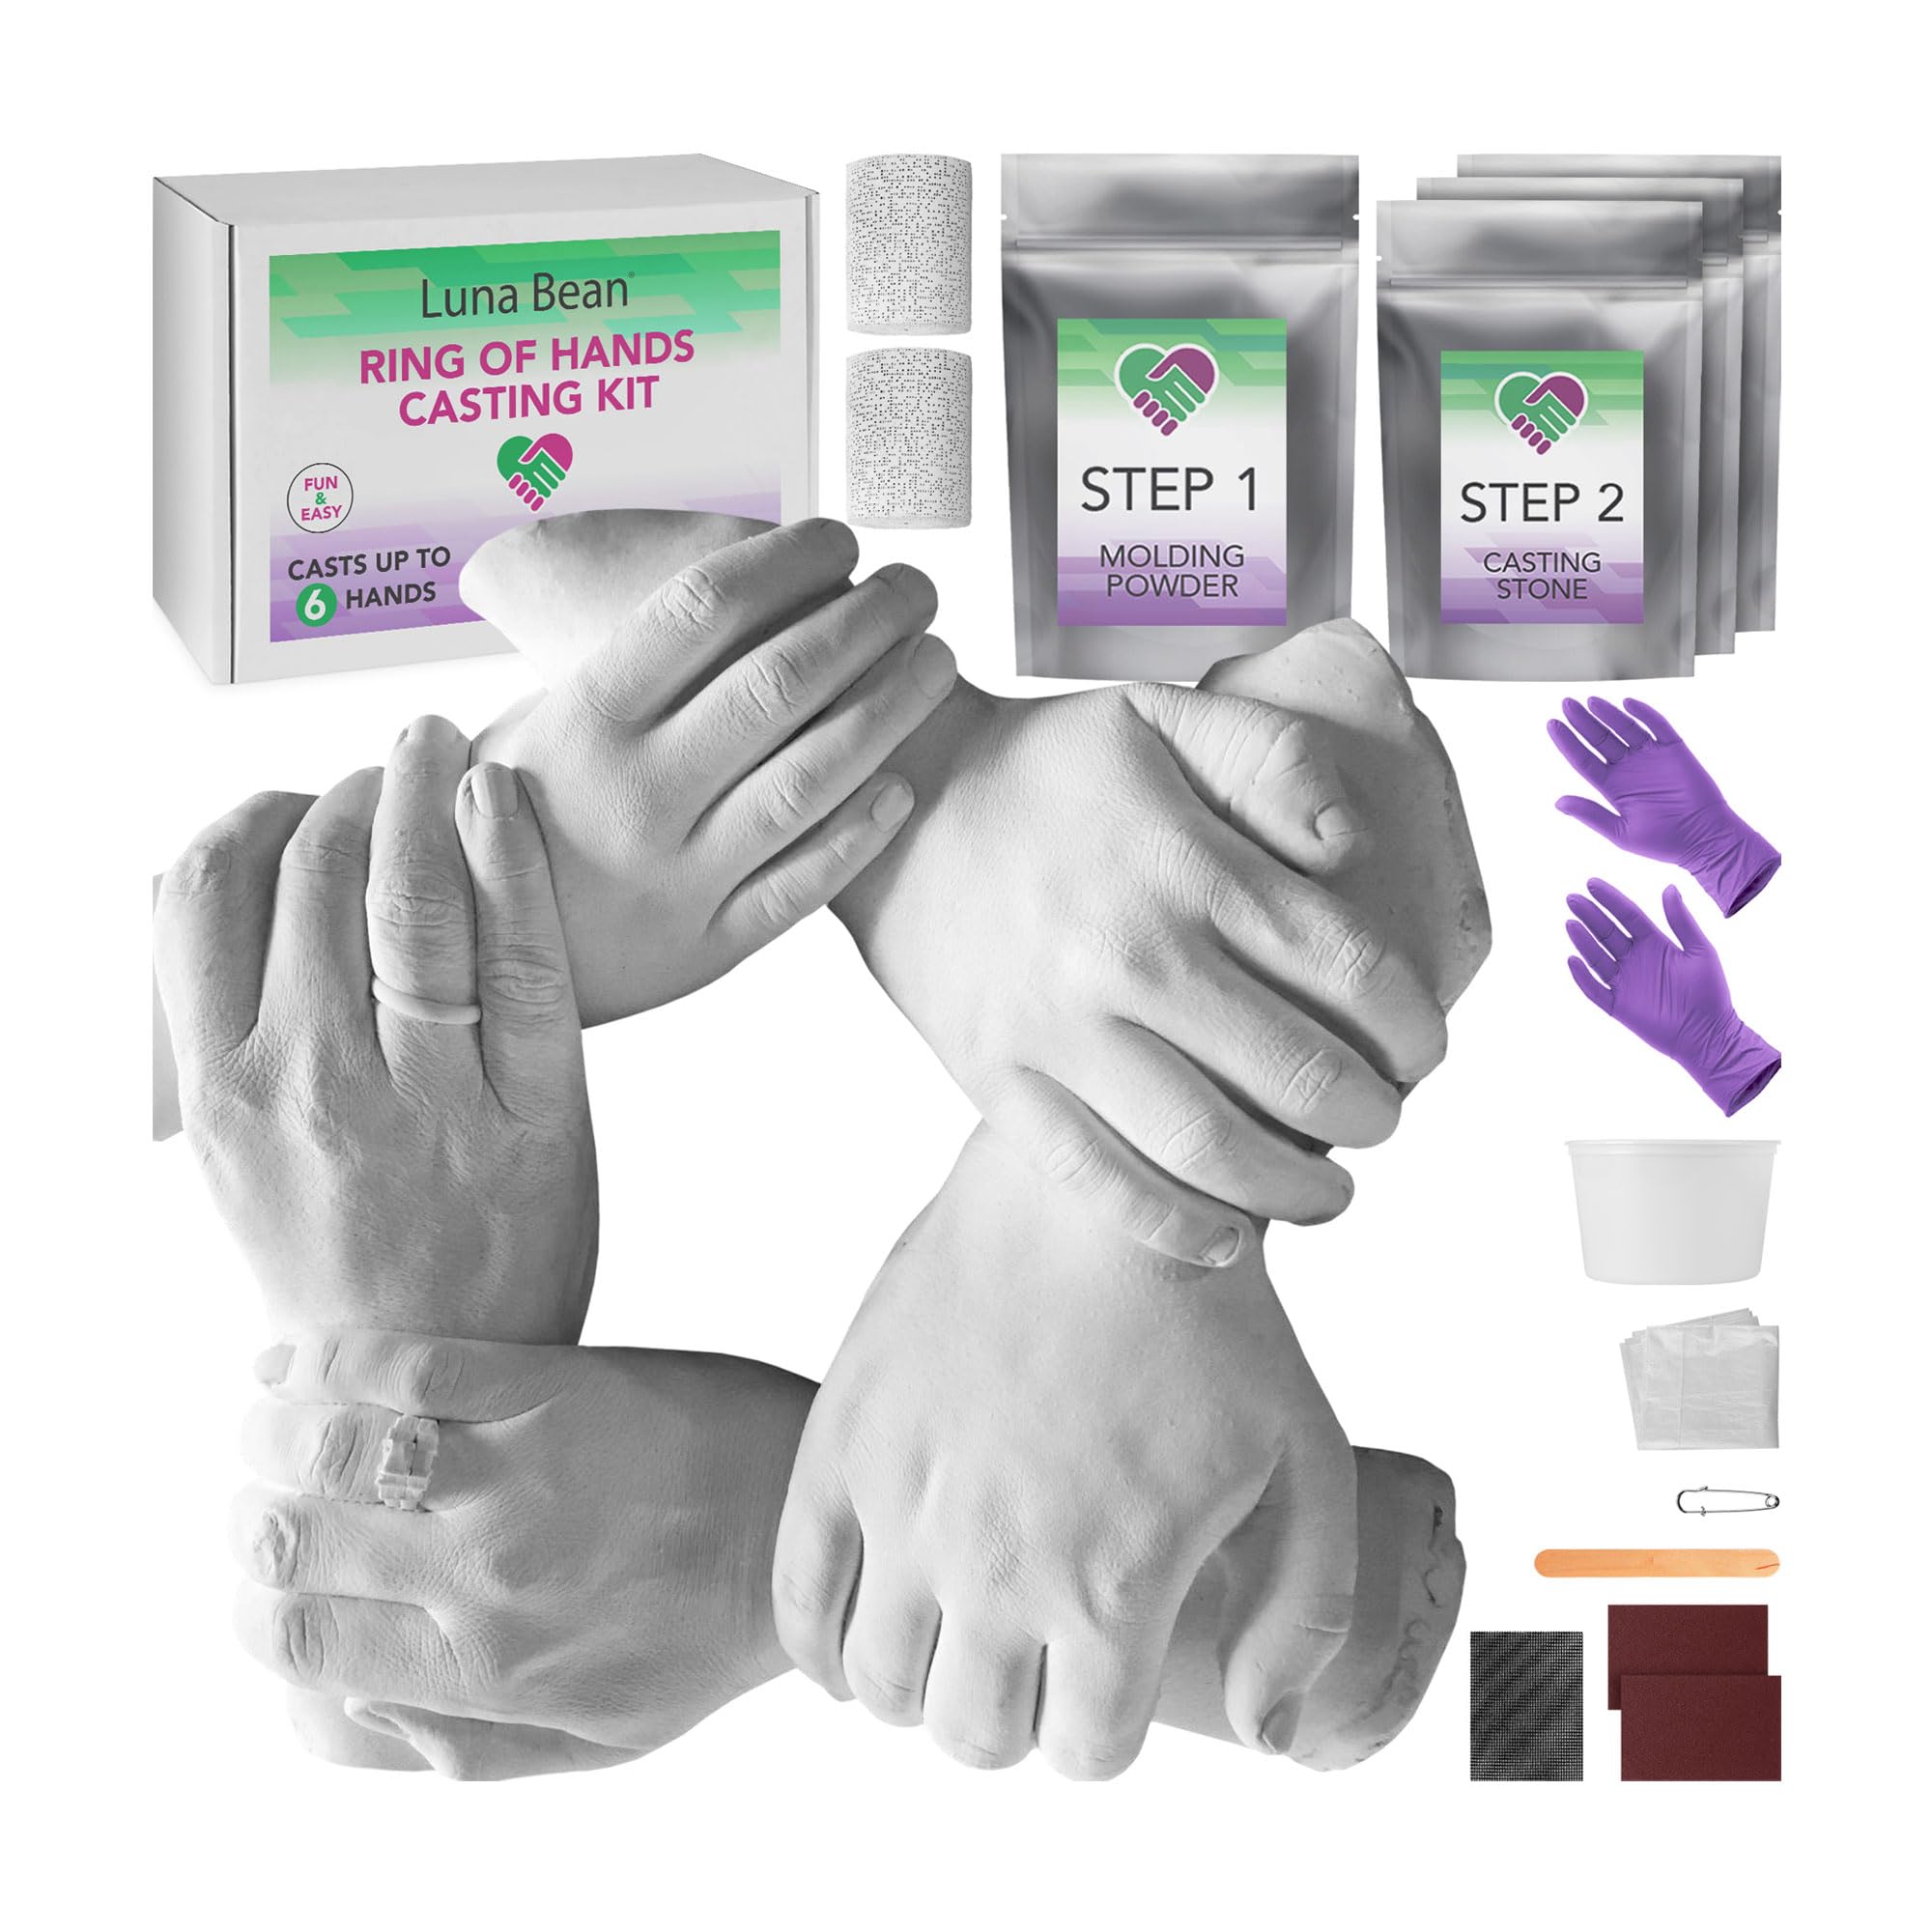  Hand Casting Kit for Family, UnityStar Hand Mold Kit